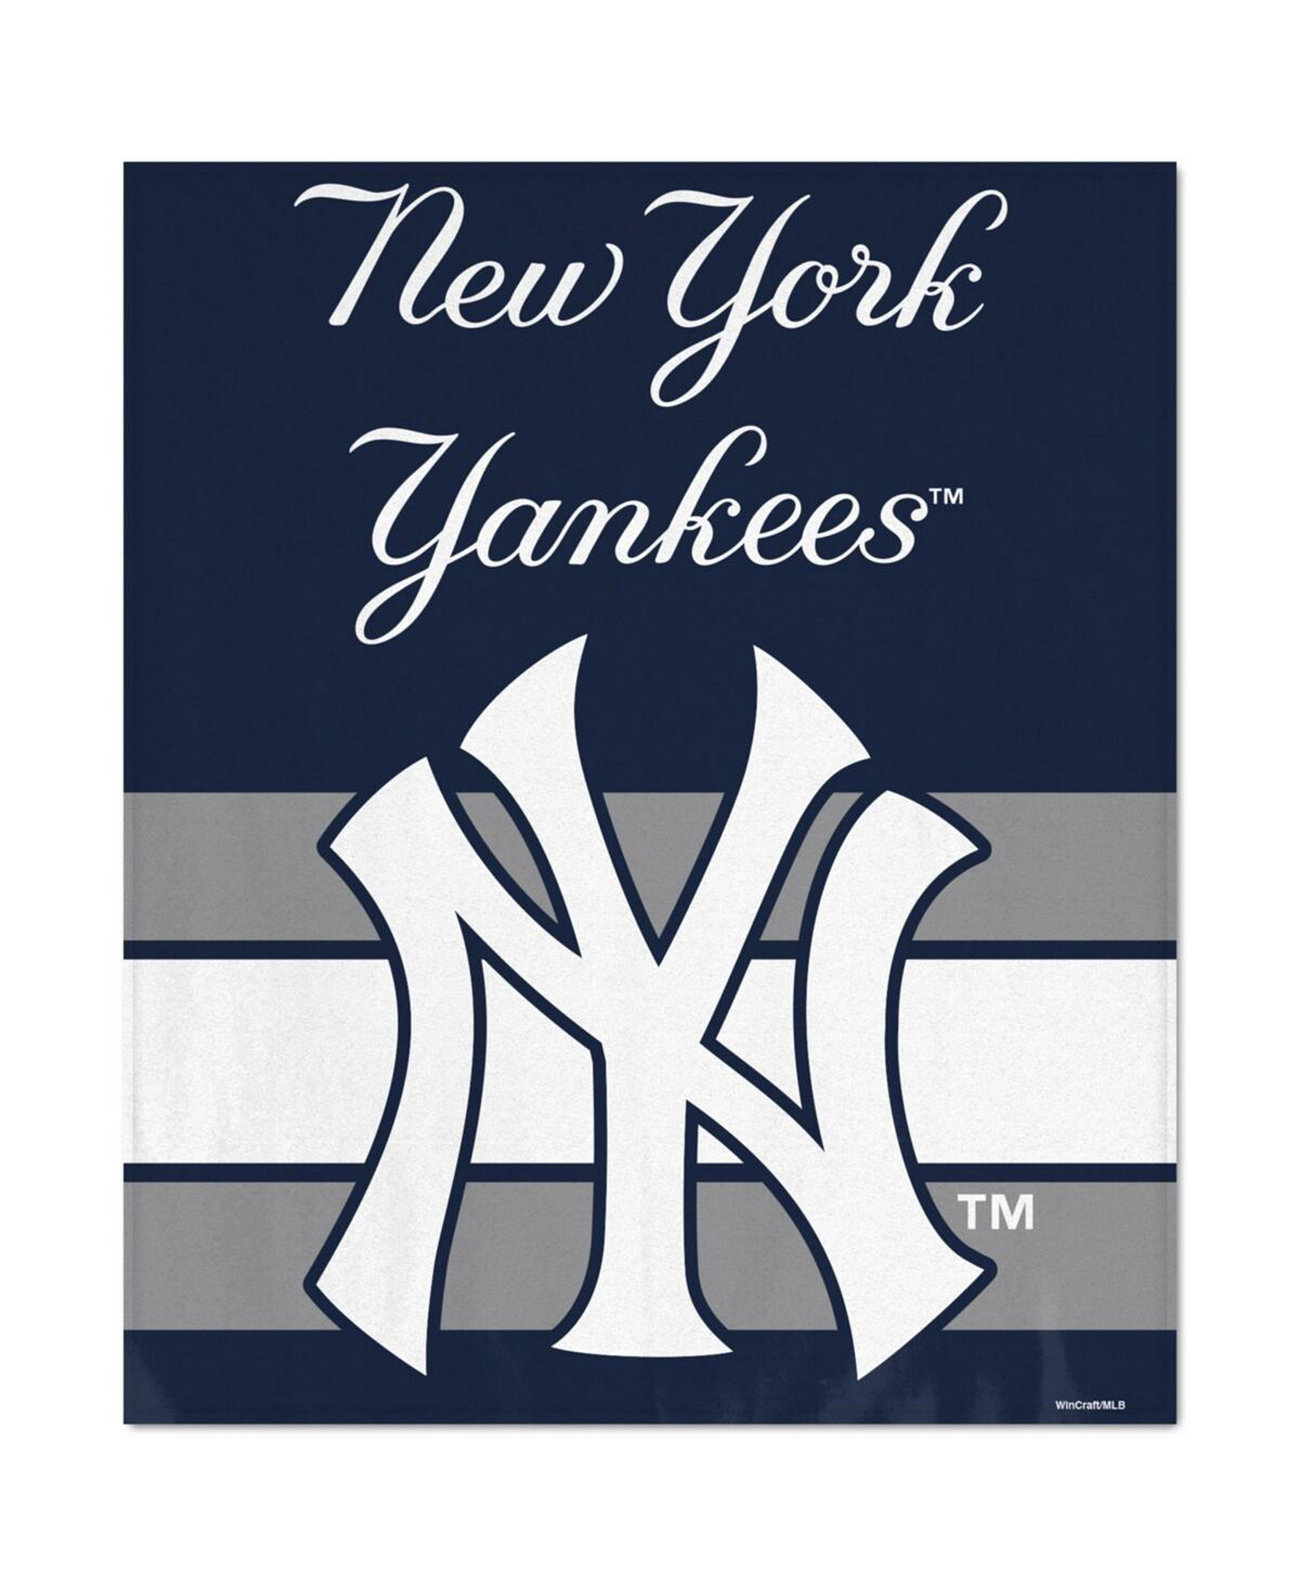 Ультраплюшевое покрывало New York Yankees размером 50 x 60 дюймов Wincraft